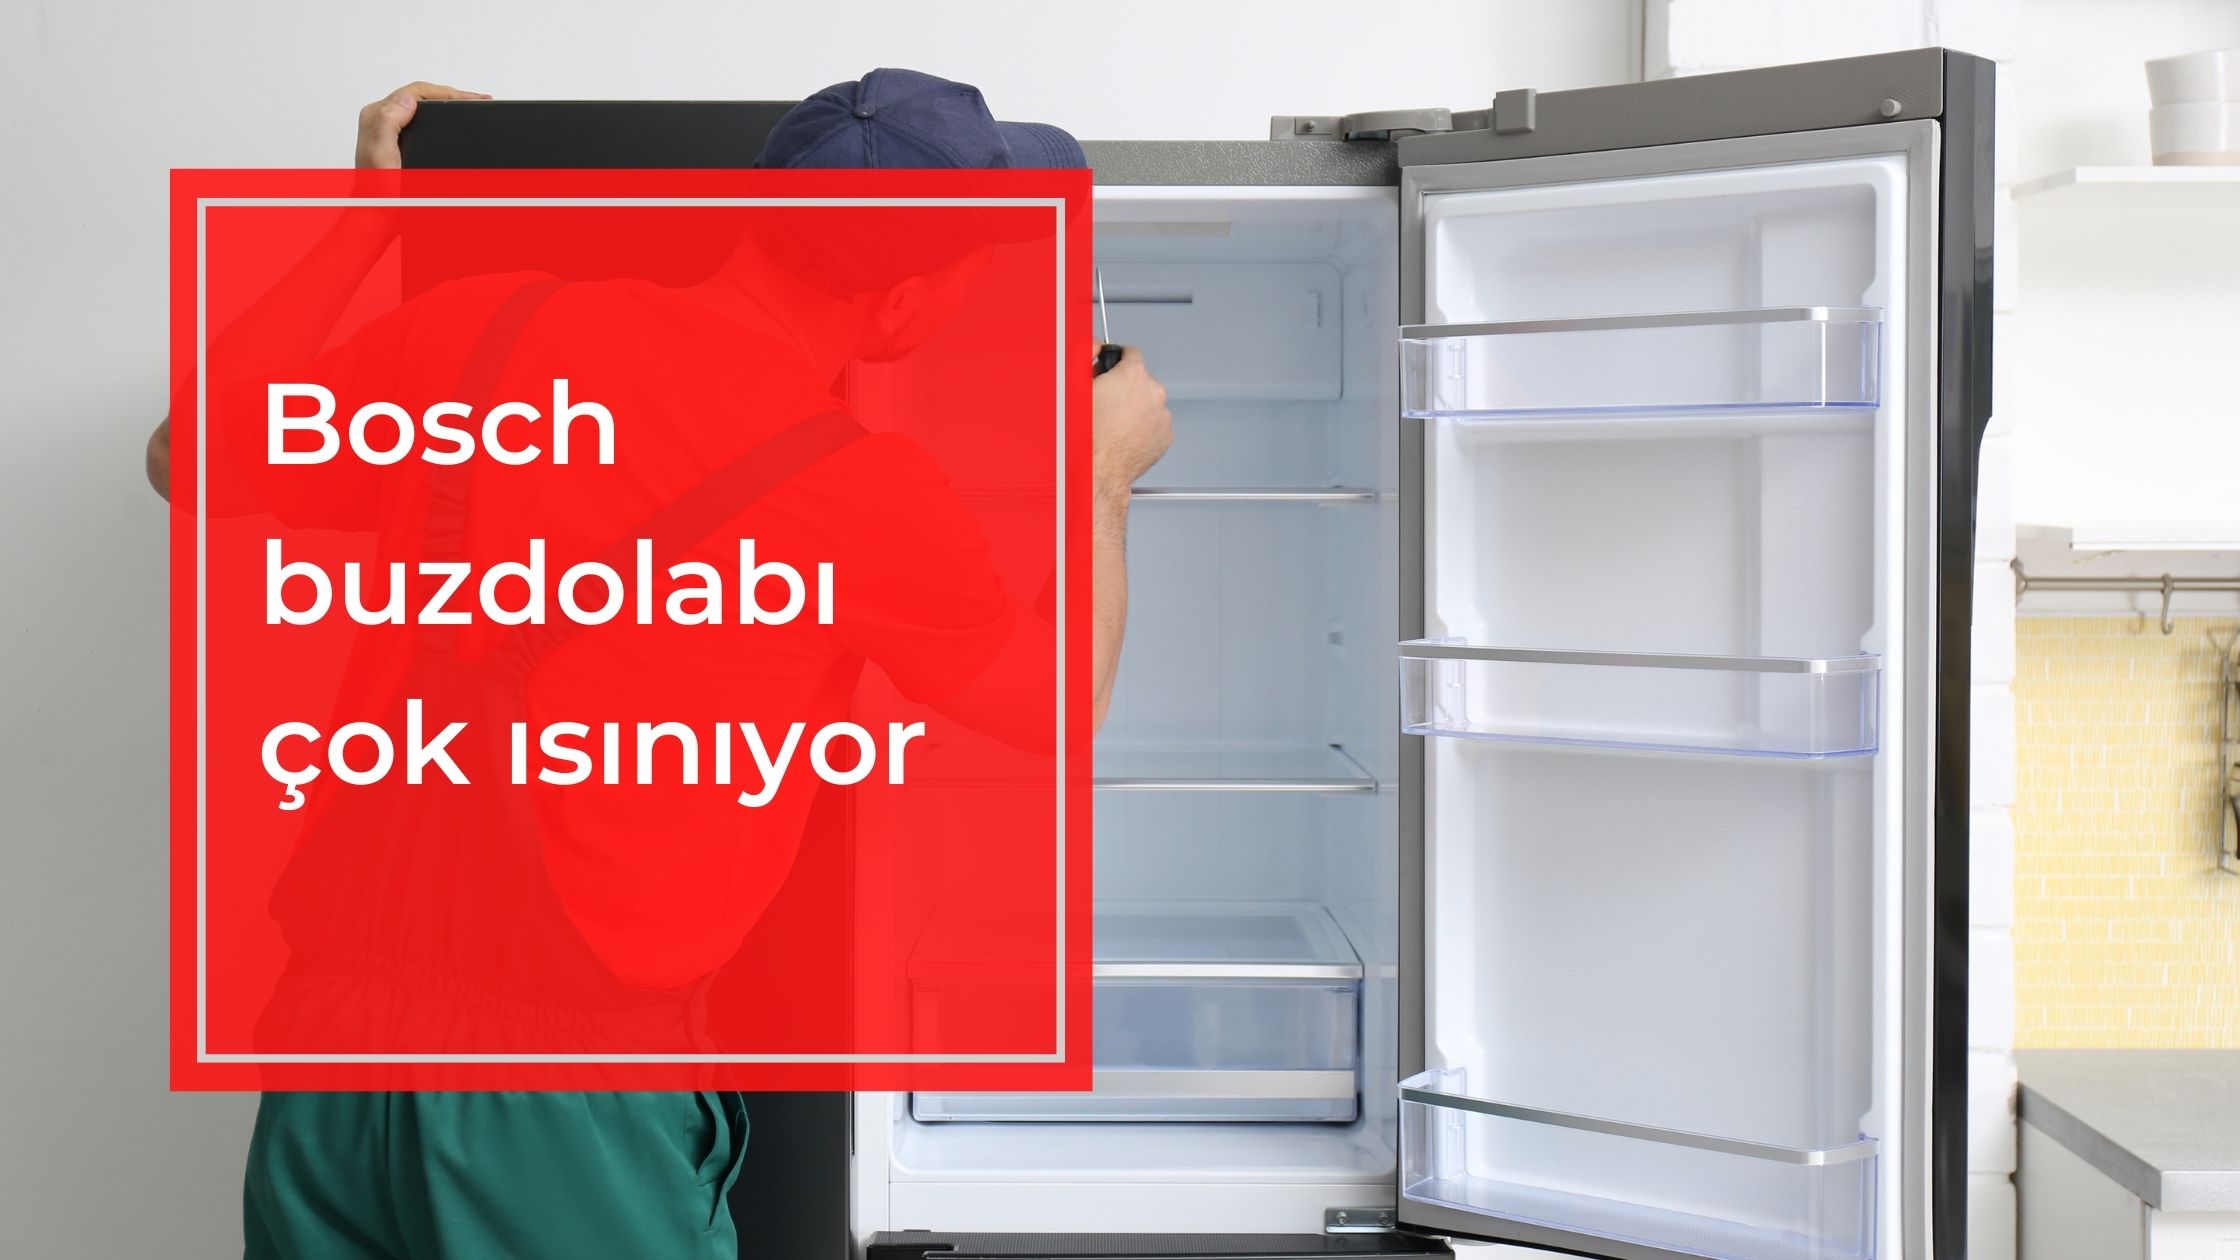 Bosch buzdolabı ısınıyor